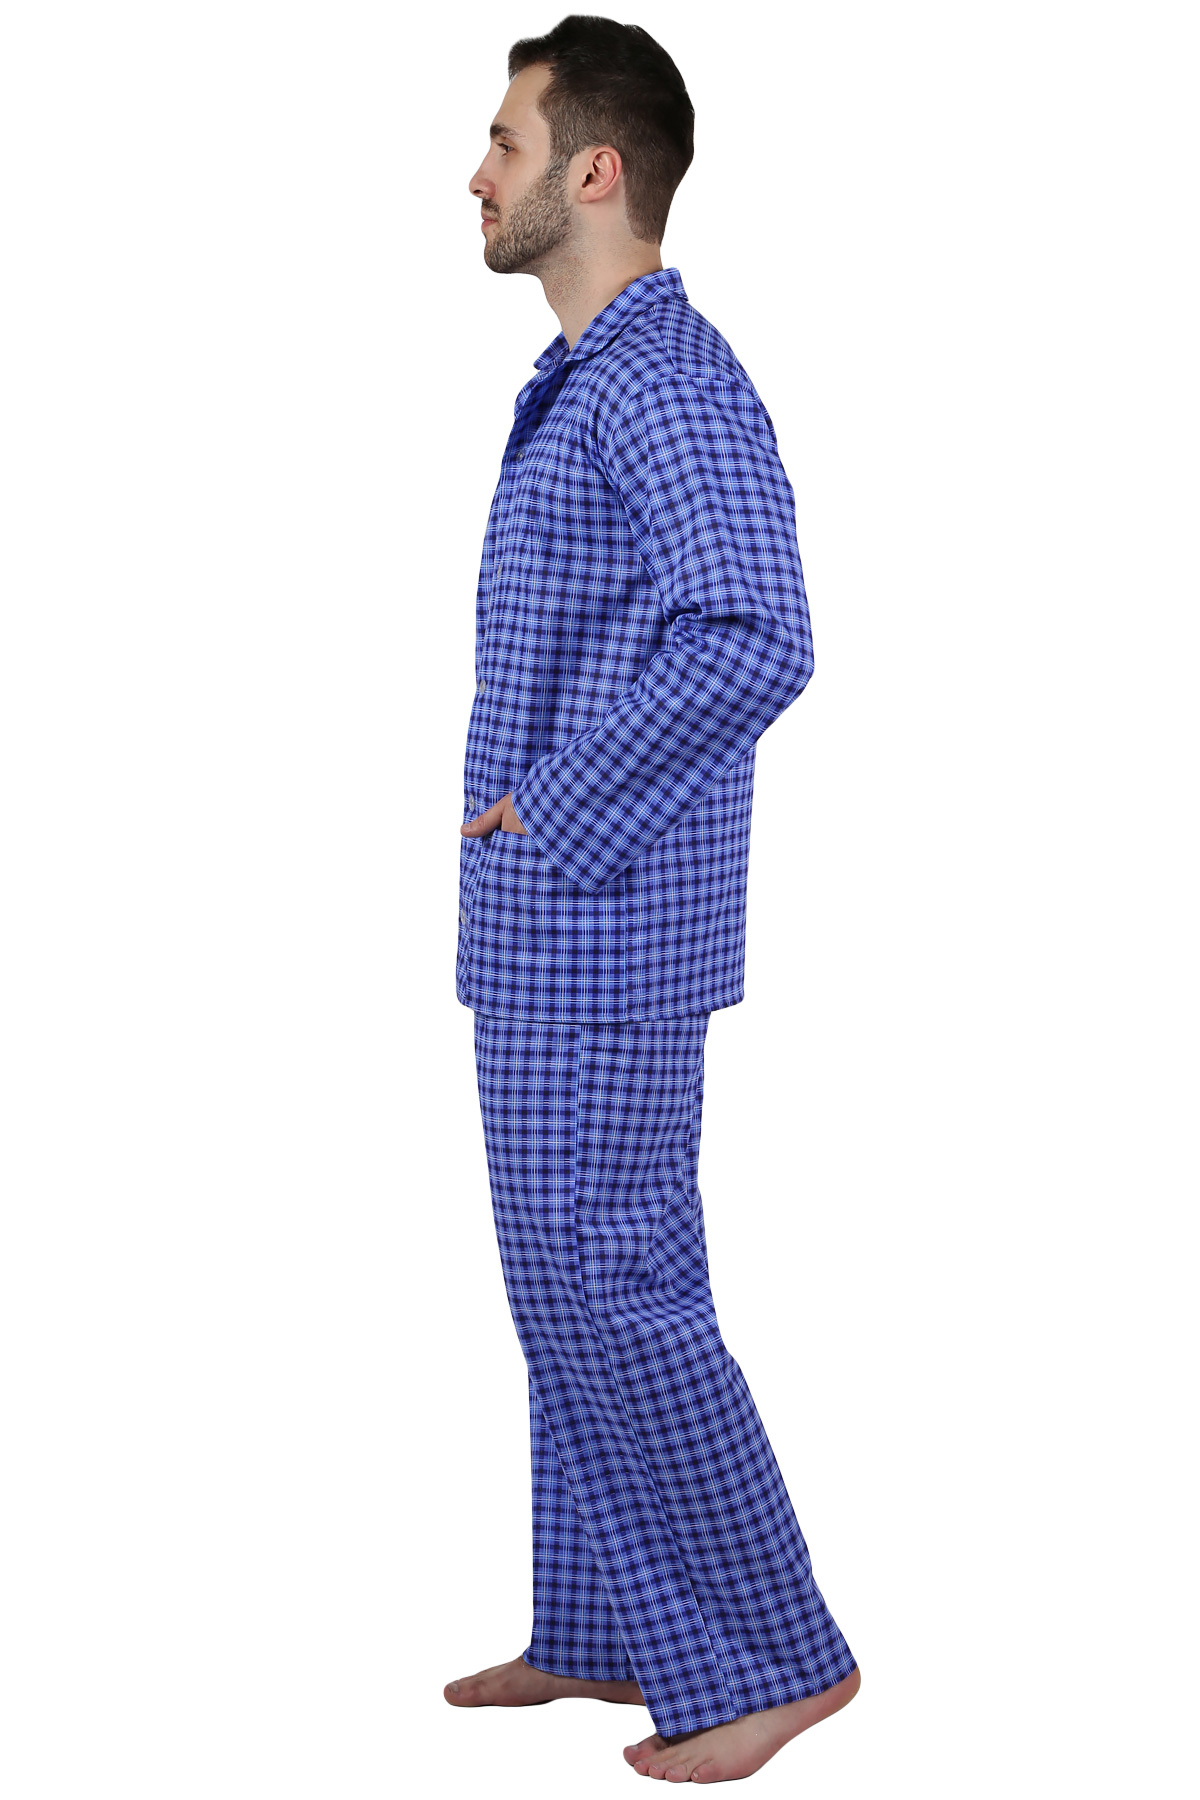 Муж. пижама арт. 22-0210 В ассортименте р. 48 Оптима трикотаж, размер 48 - фото 2